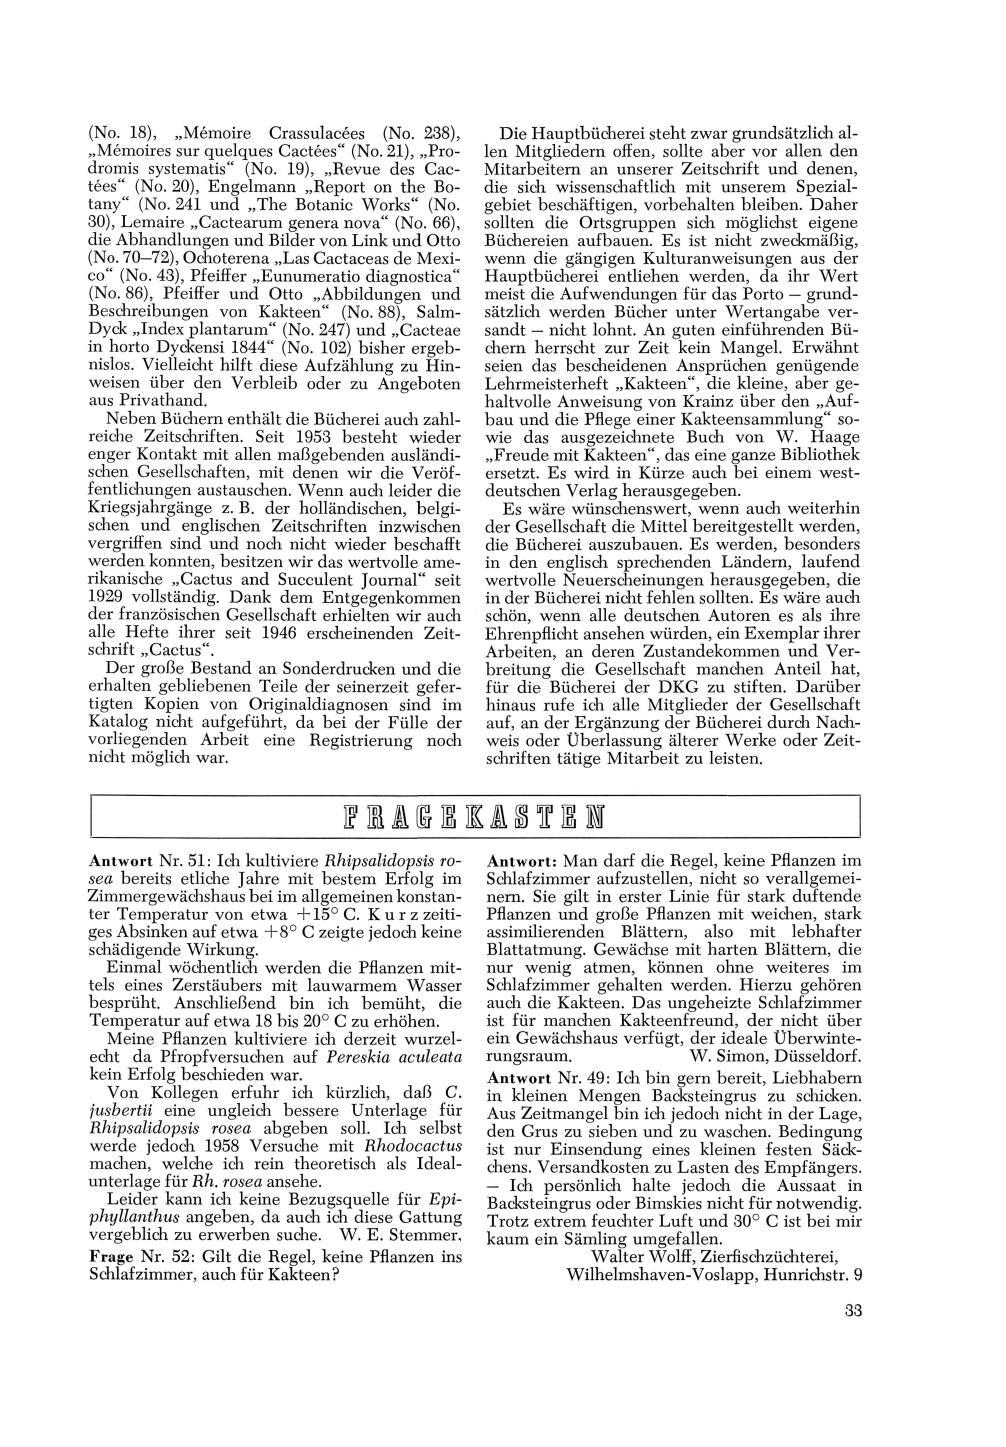 (No. 18), Mémoire Crassulacées (No. 238), Mémoires sur quelques Cactées"(No.21), Prodromis systematis" (No. 19), Revue des Cactées" (No. 20), Engelmann Report on the Botany" (No.